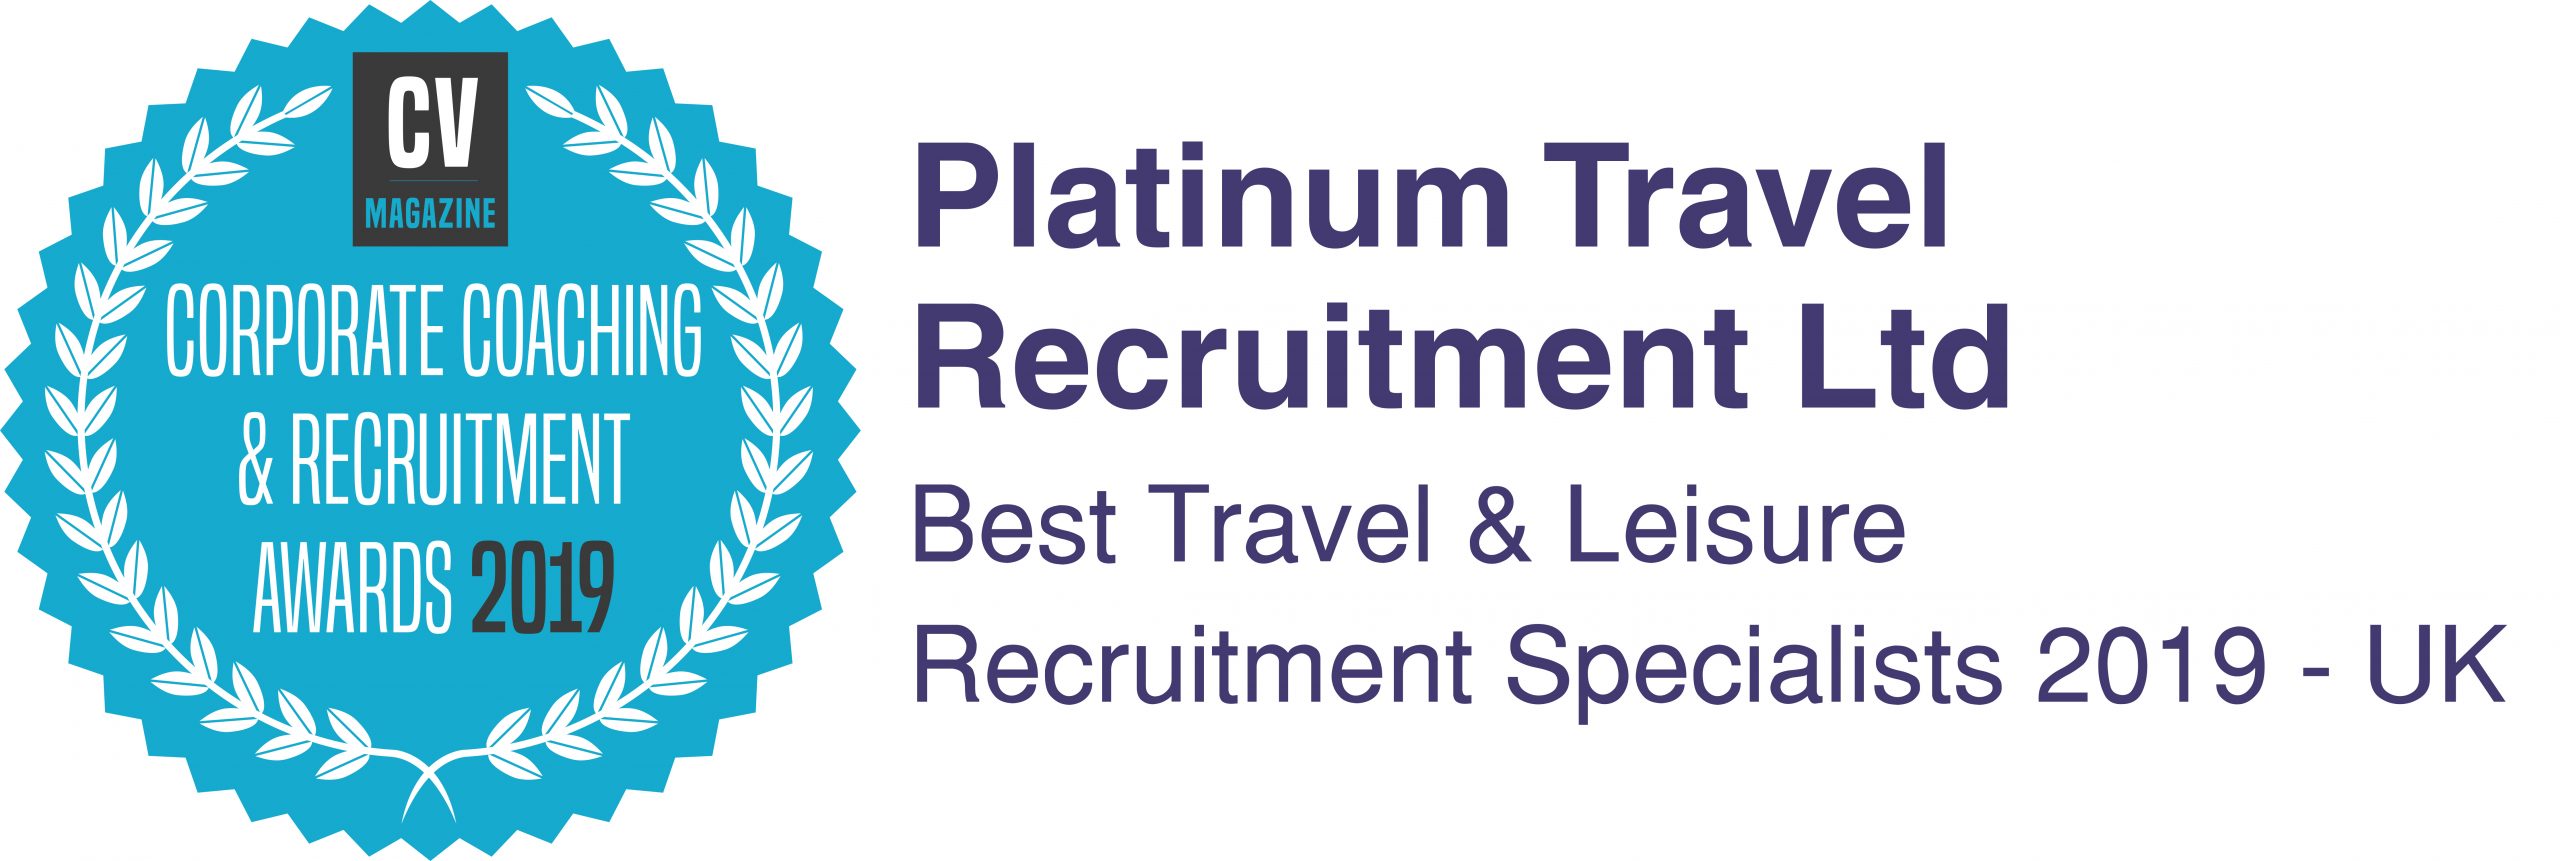 platinum travel recruitment